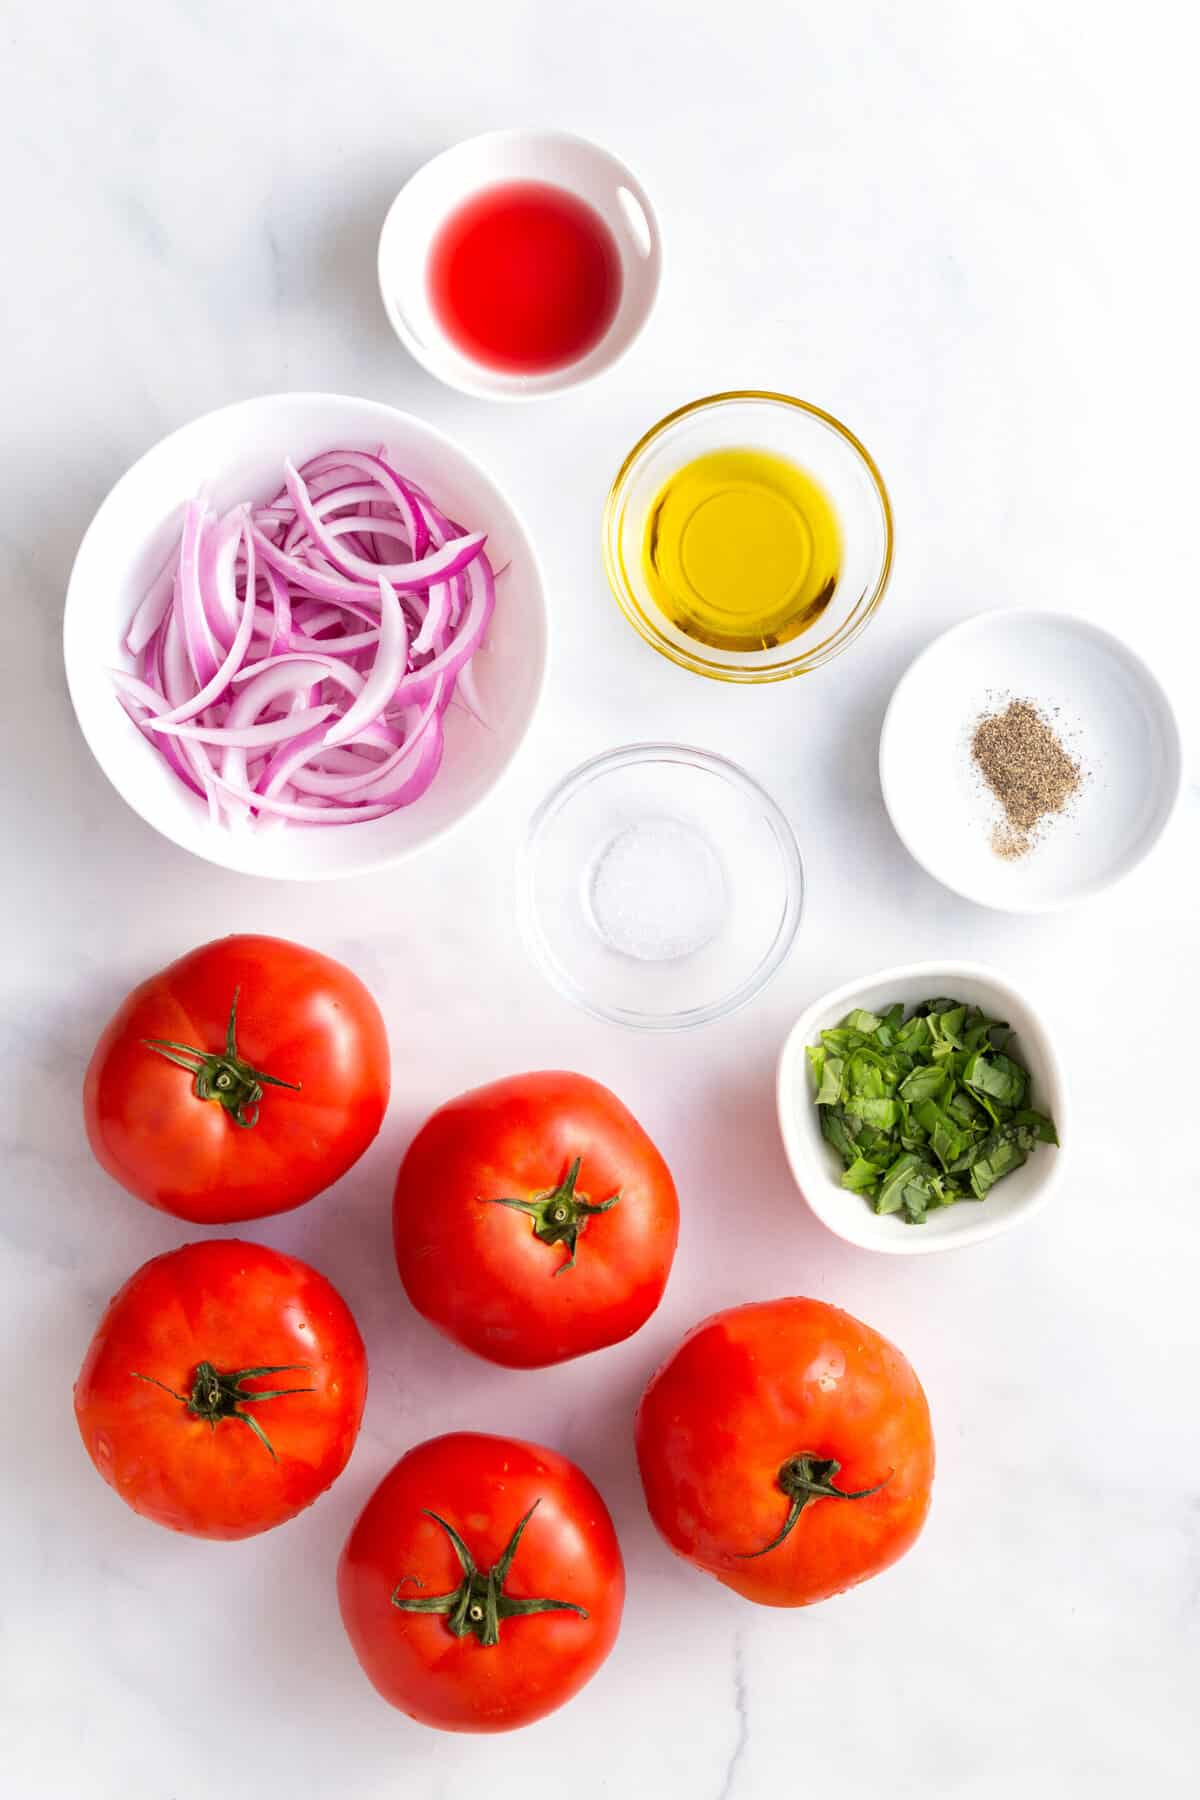 ingredients to make tomato salad